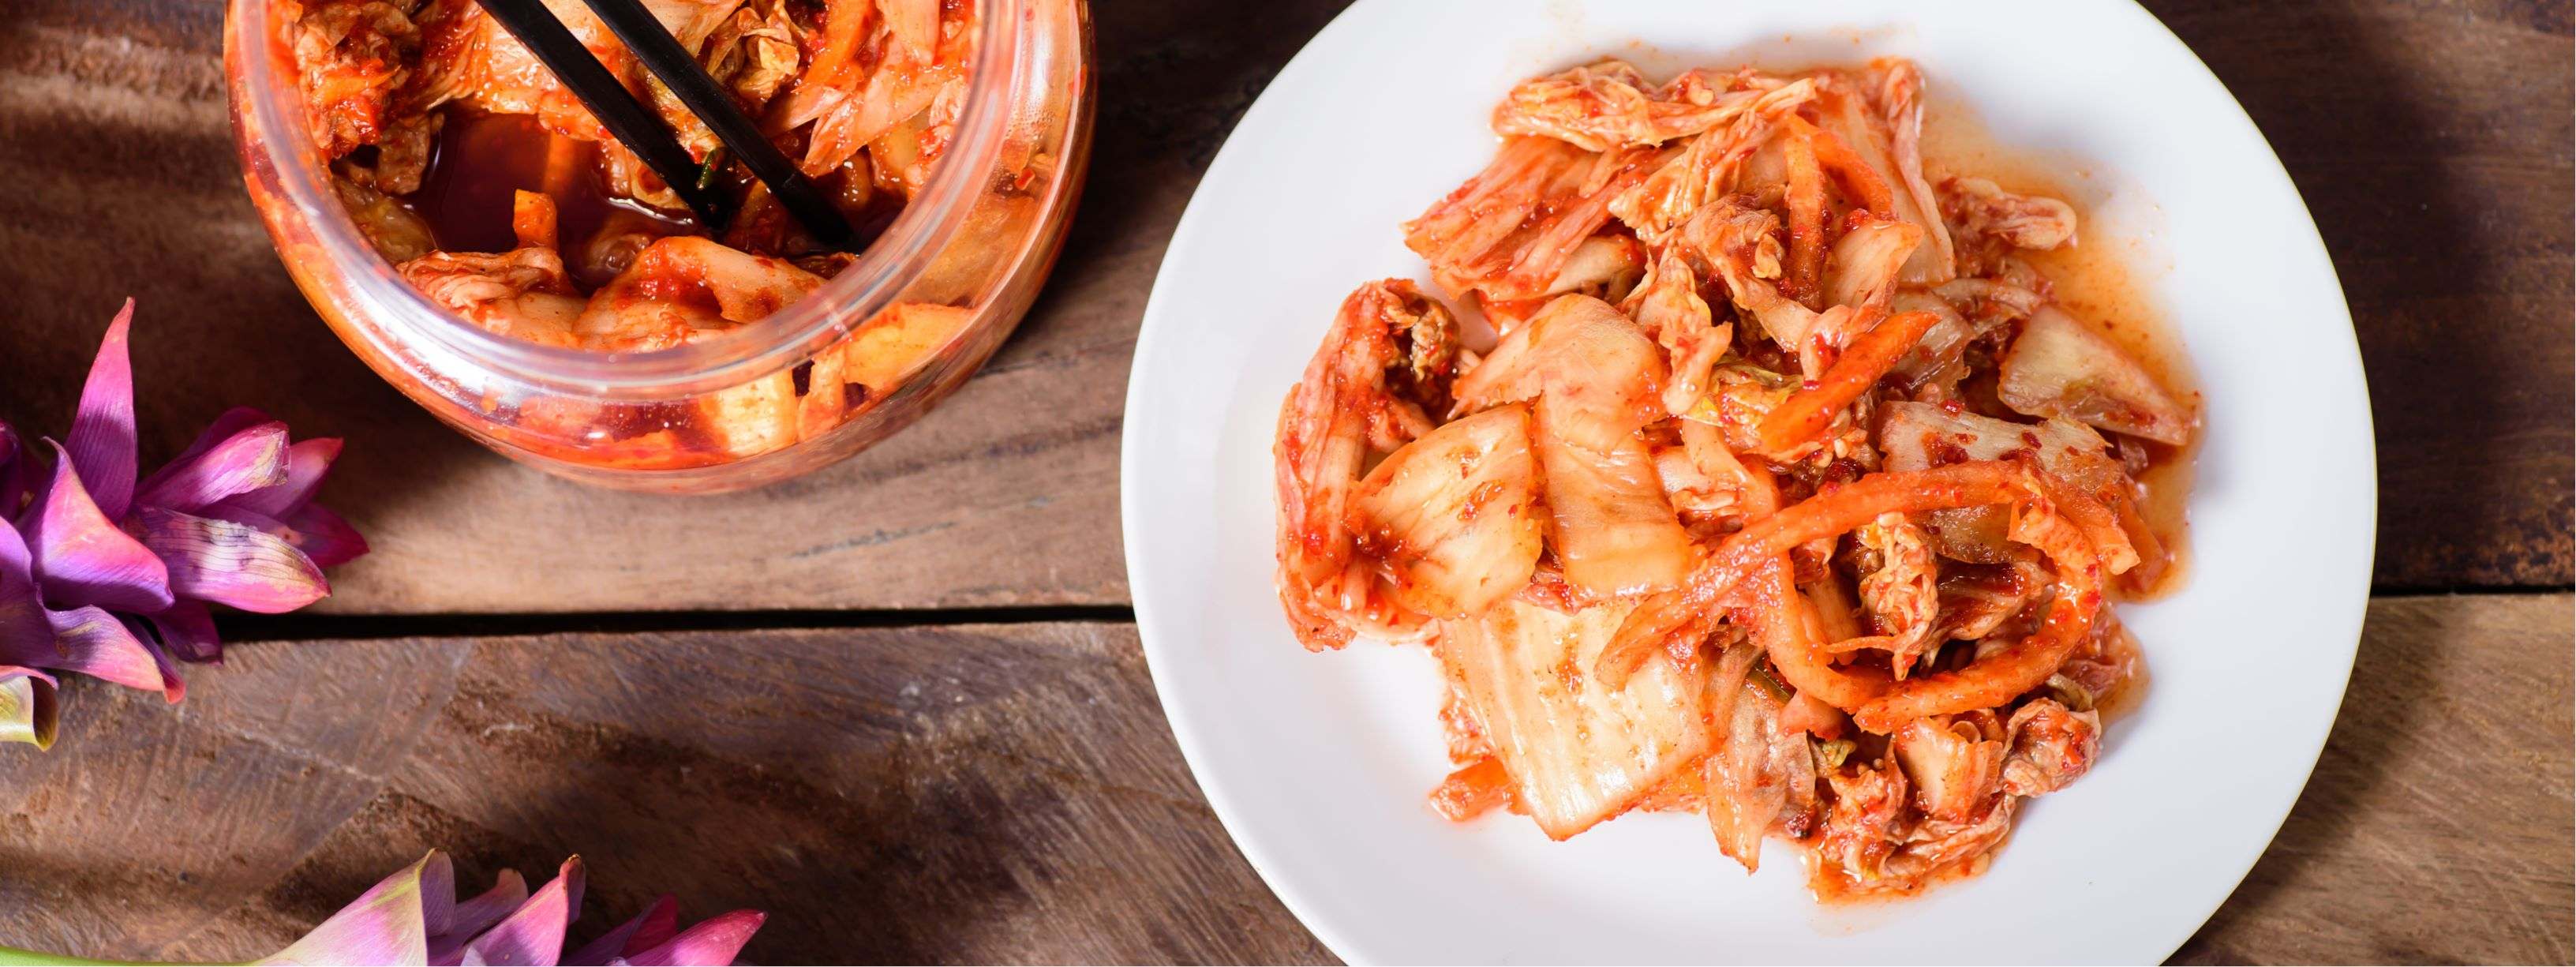 Kimchi- Koreanischer Salat aus fermentiertem Gemüße